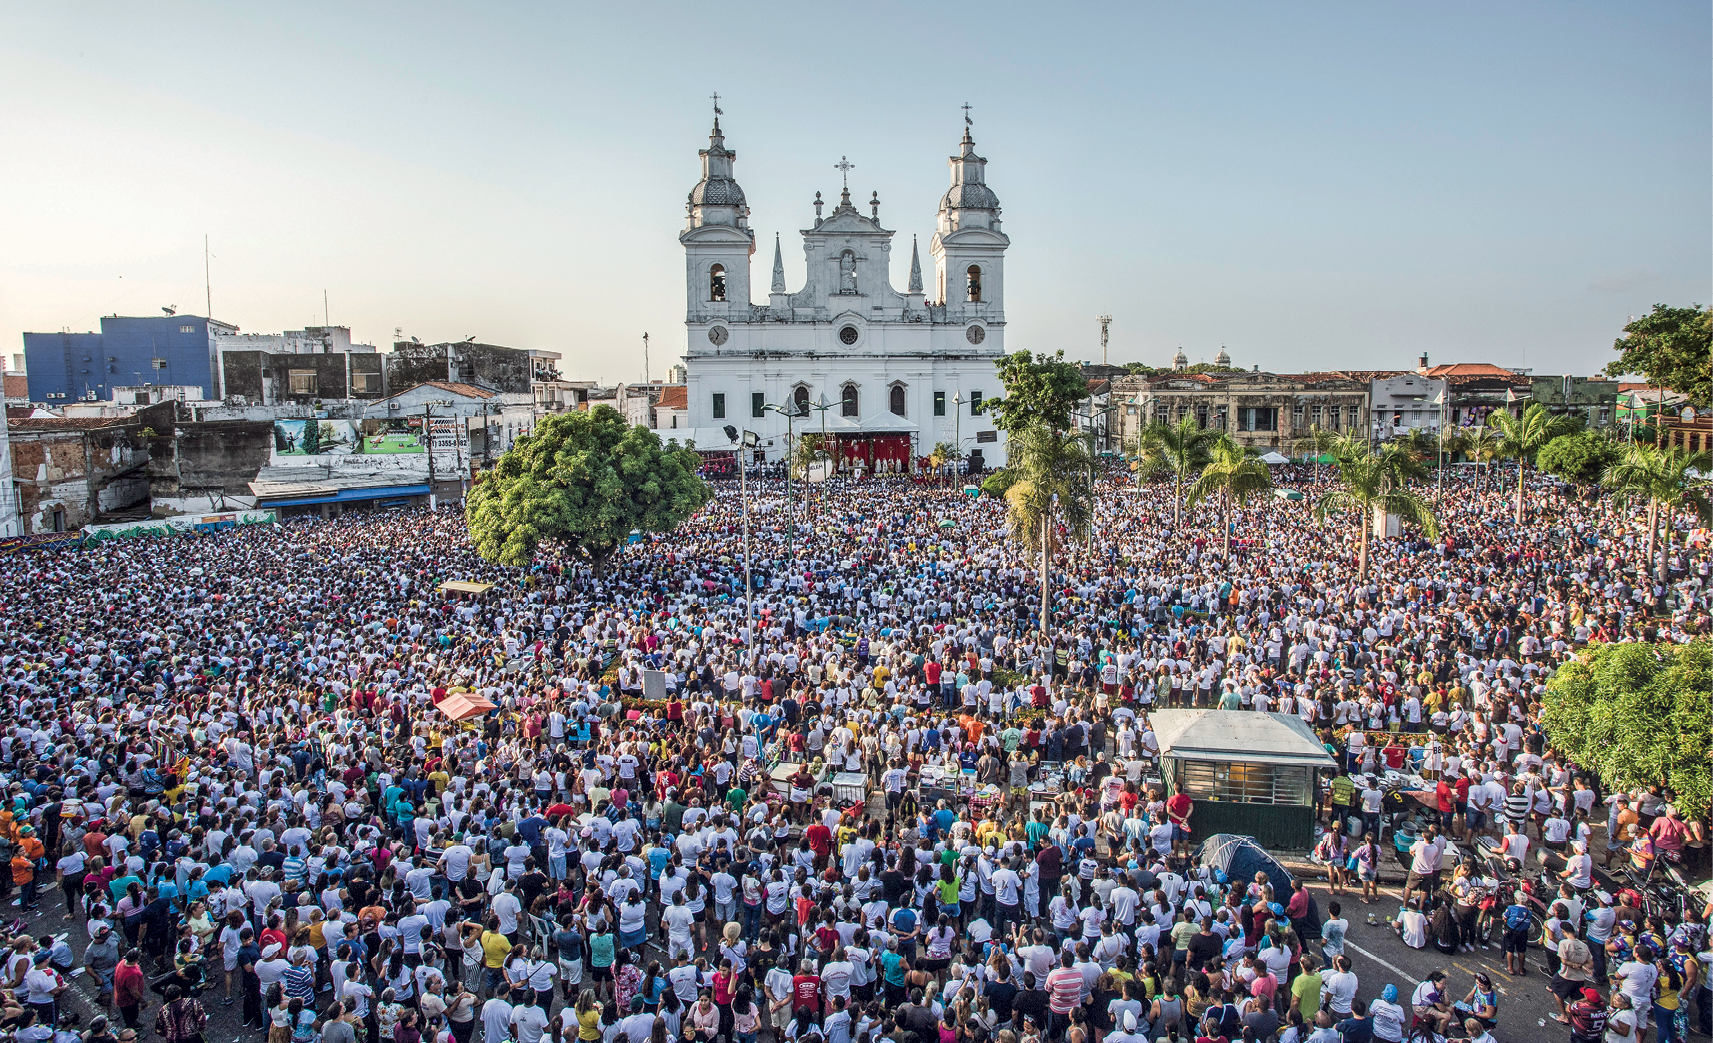 Fotografia. Vista de uma praça ampla com uma multidão de pessoas. Elas estão olhando em direção a um palco que está na frente de uma grande igreja com duas torres e cruzes no topo.